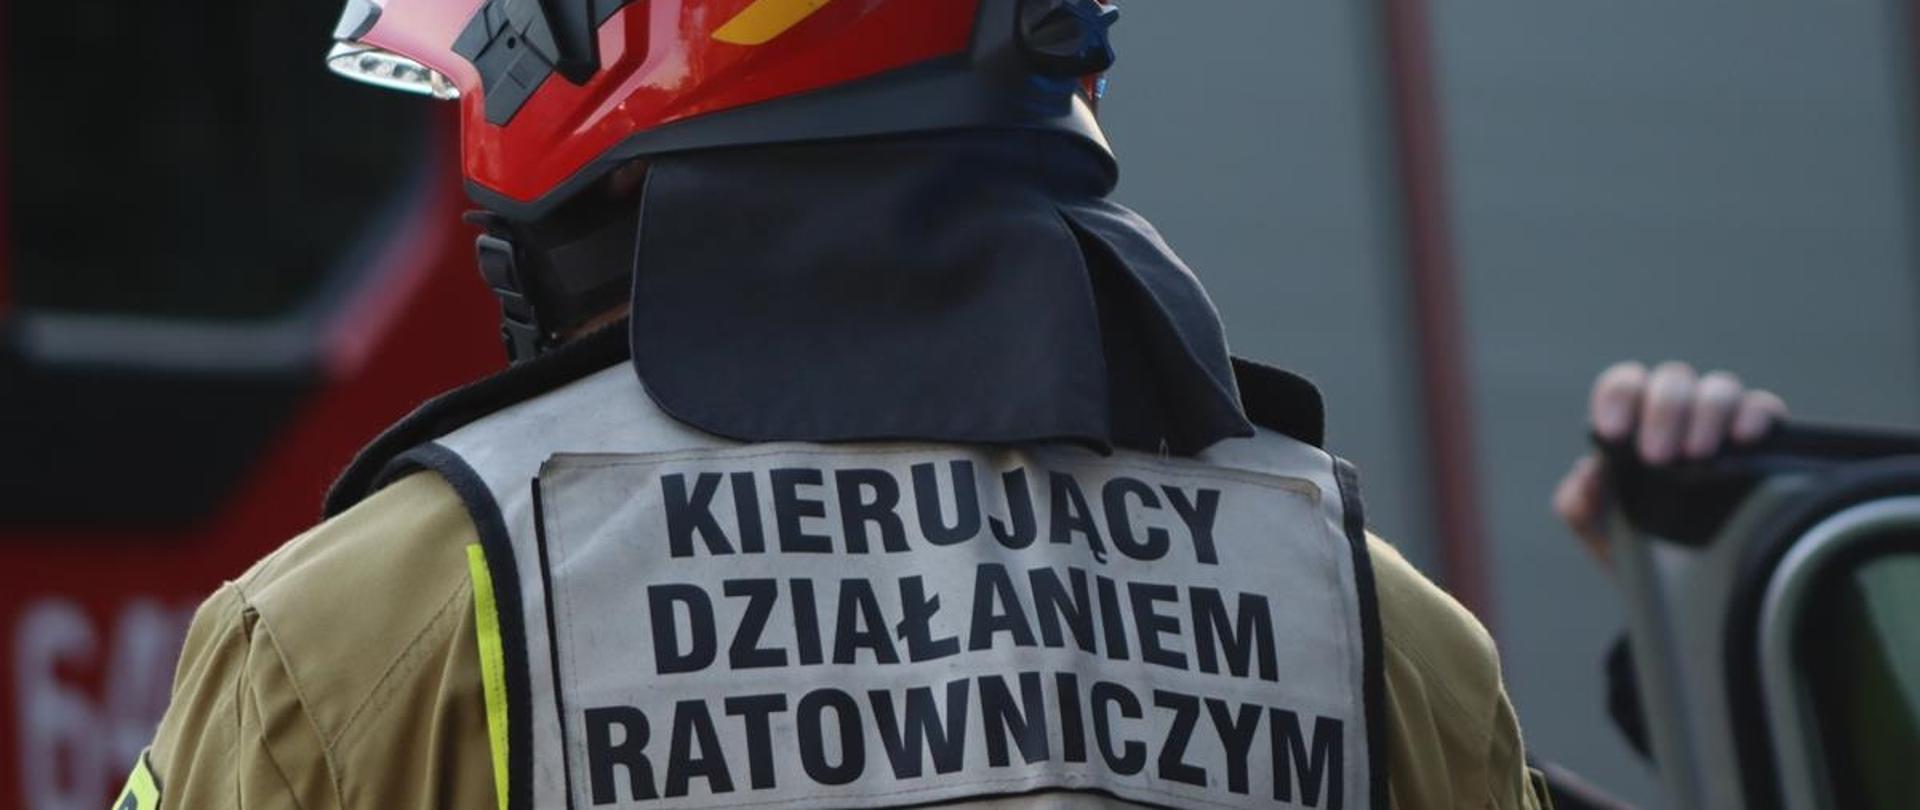 Na zdjęciu strażak w ubraniu specjalnym, ubrany w kamizelkę z napisem "Kierujący działaniem ratowniczym"